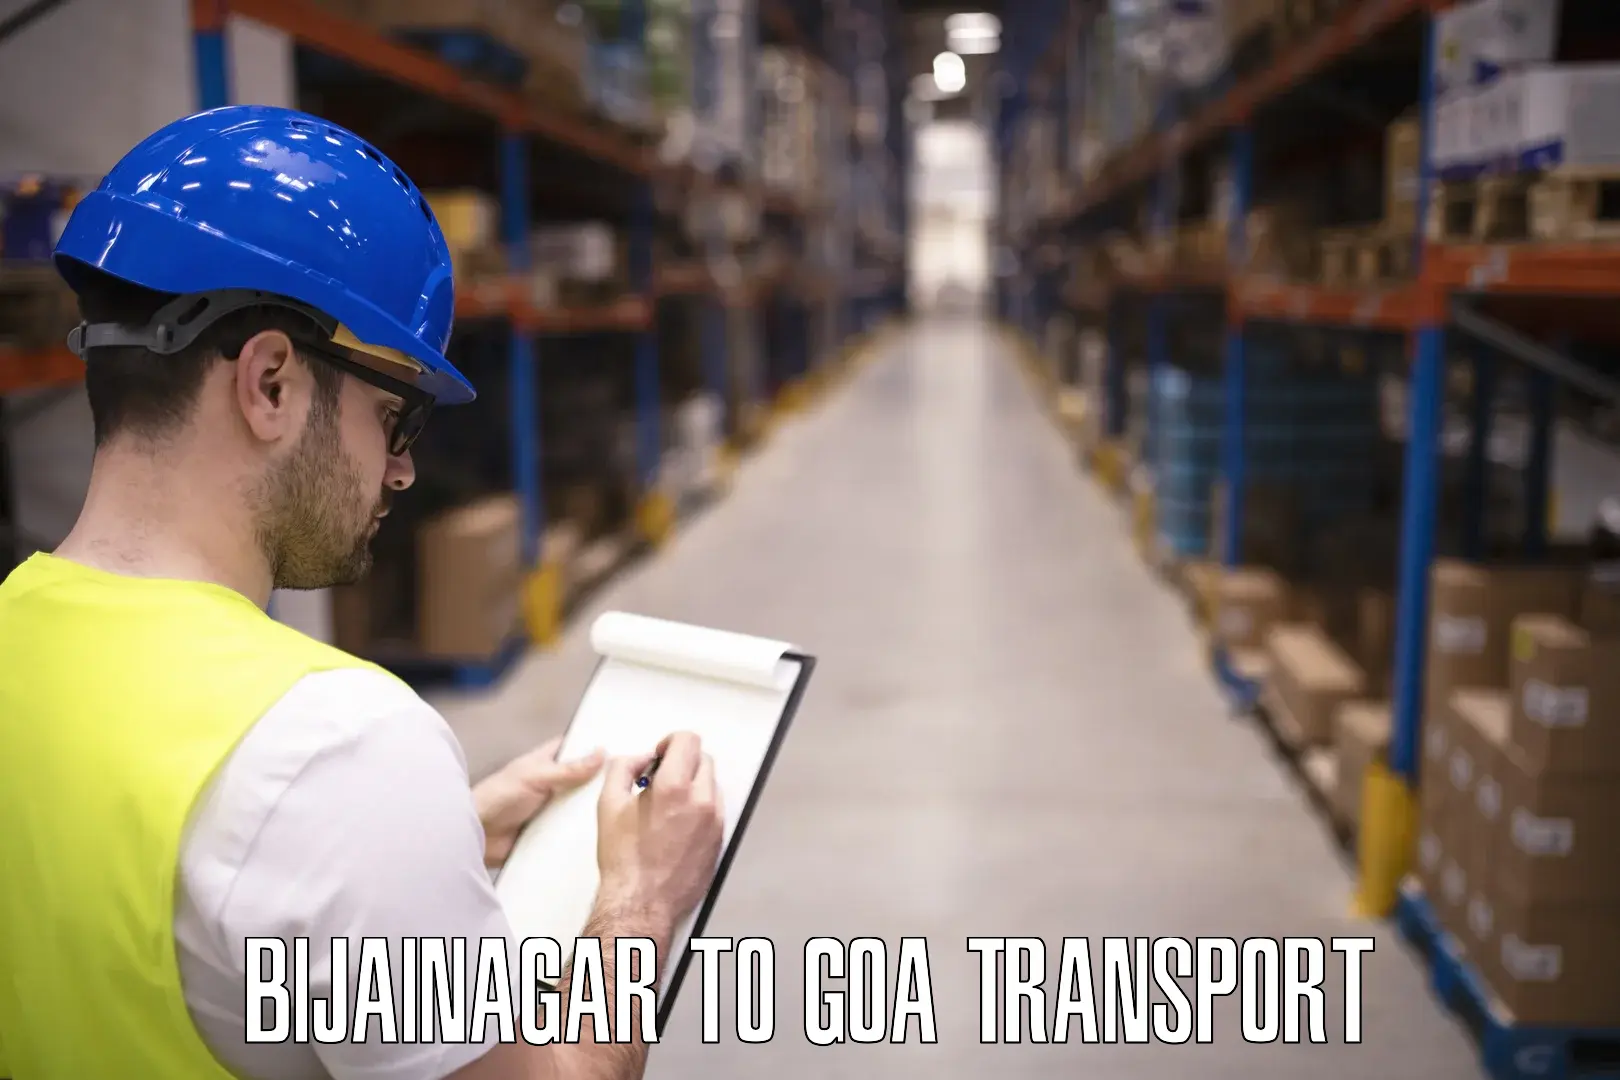 Furniture transport service Bijainagar to Canacona